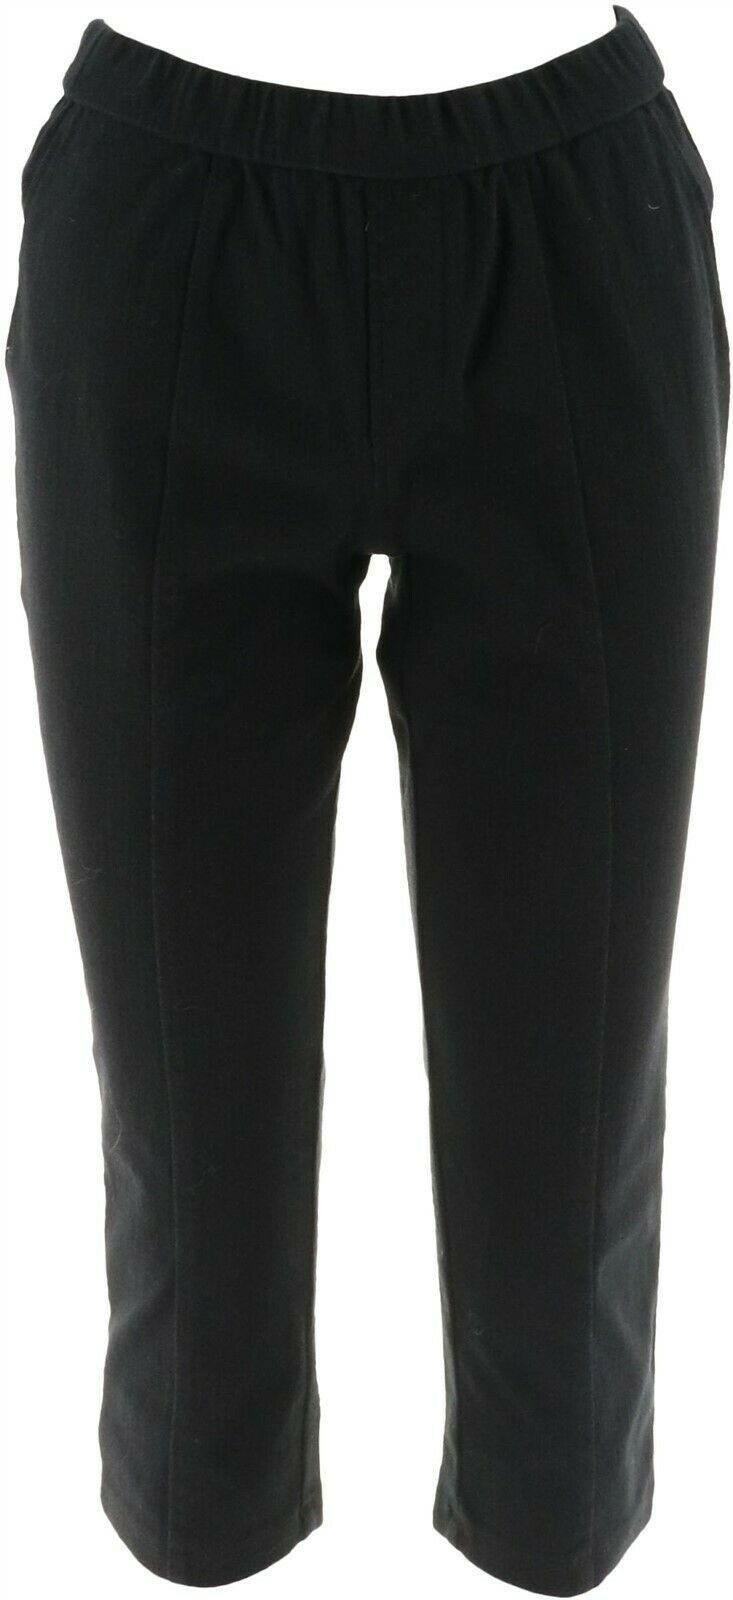 Isaac Mizrahi Petite Knit Denim Crop Pull-On Jeans Black P2 NEW A303203